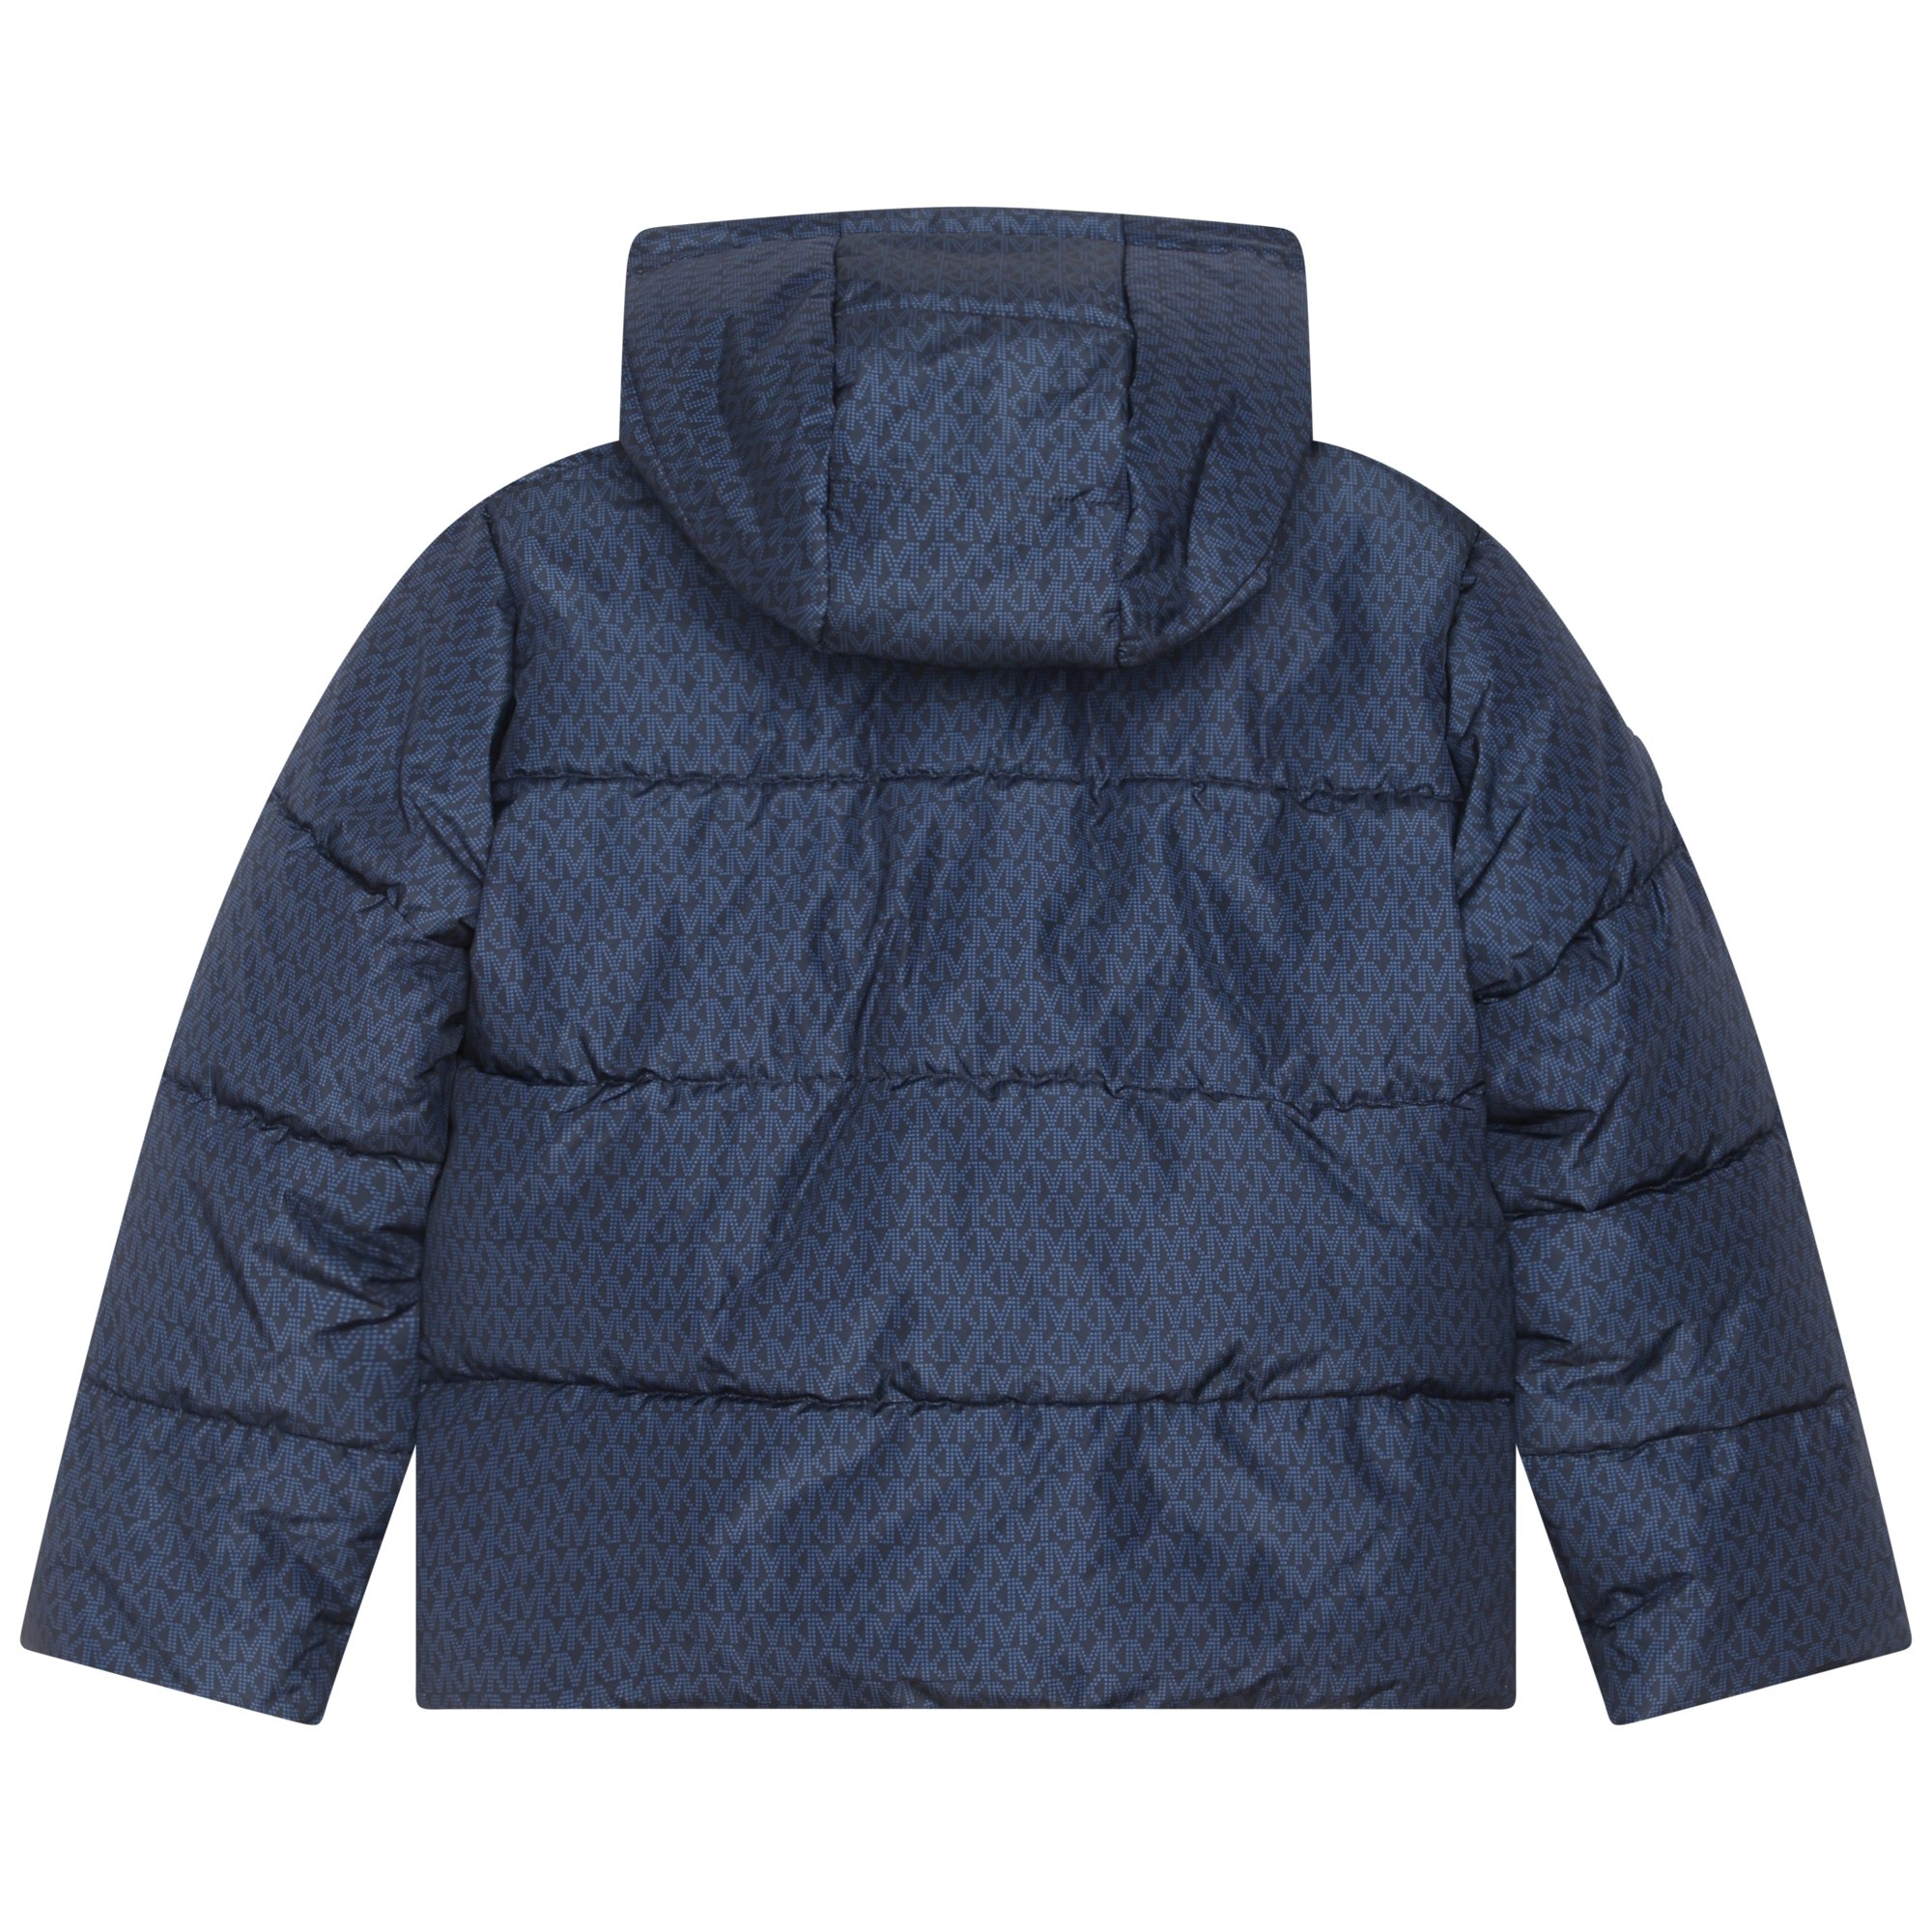 Hooded puffer jacket MICHAEL KORS for GIRL